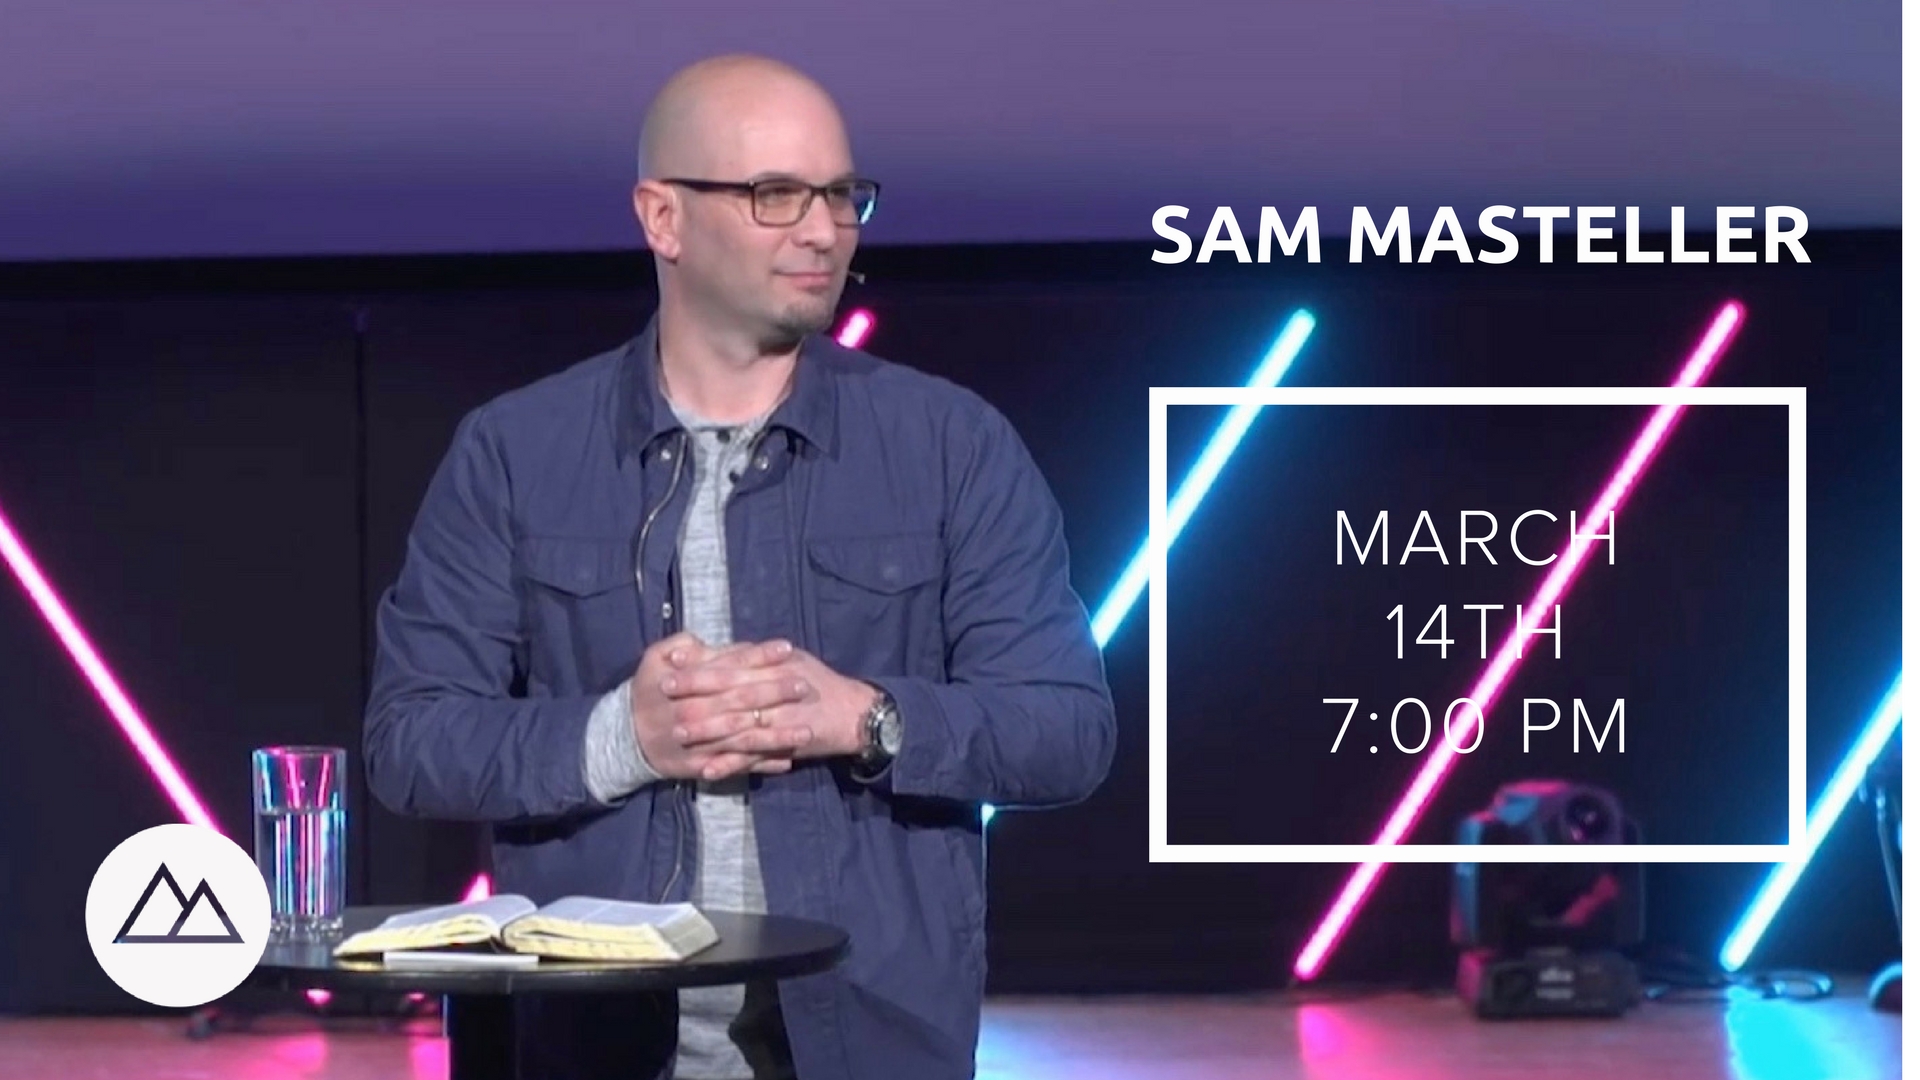 Sam Masteller | March 14, 2018